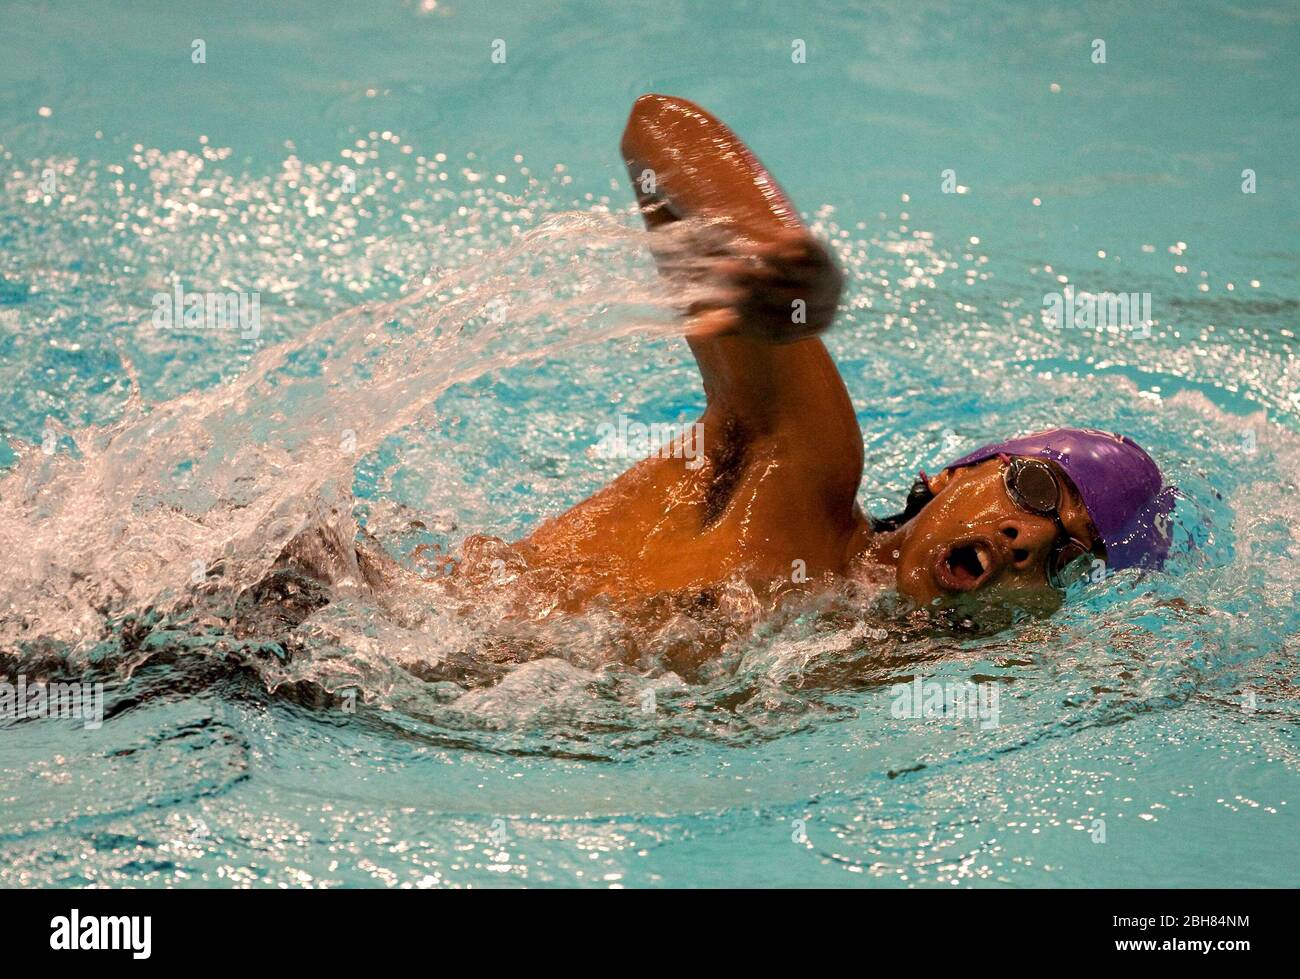 Austin Texas Etats-Unis, 29 janvier 2010: L'étudiant de la région d'Austin nage avec la jambe libre de la course de relais dans un quartier de natation rencontre à l'Université du Texas au centre de natation d'Austin. ©Bob Daemmrich Banque D'Images